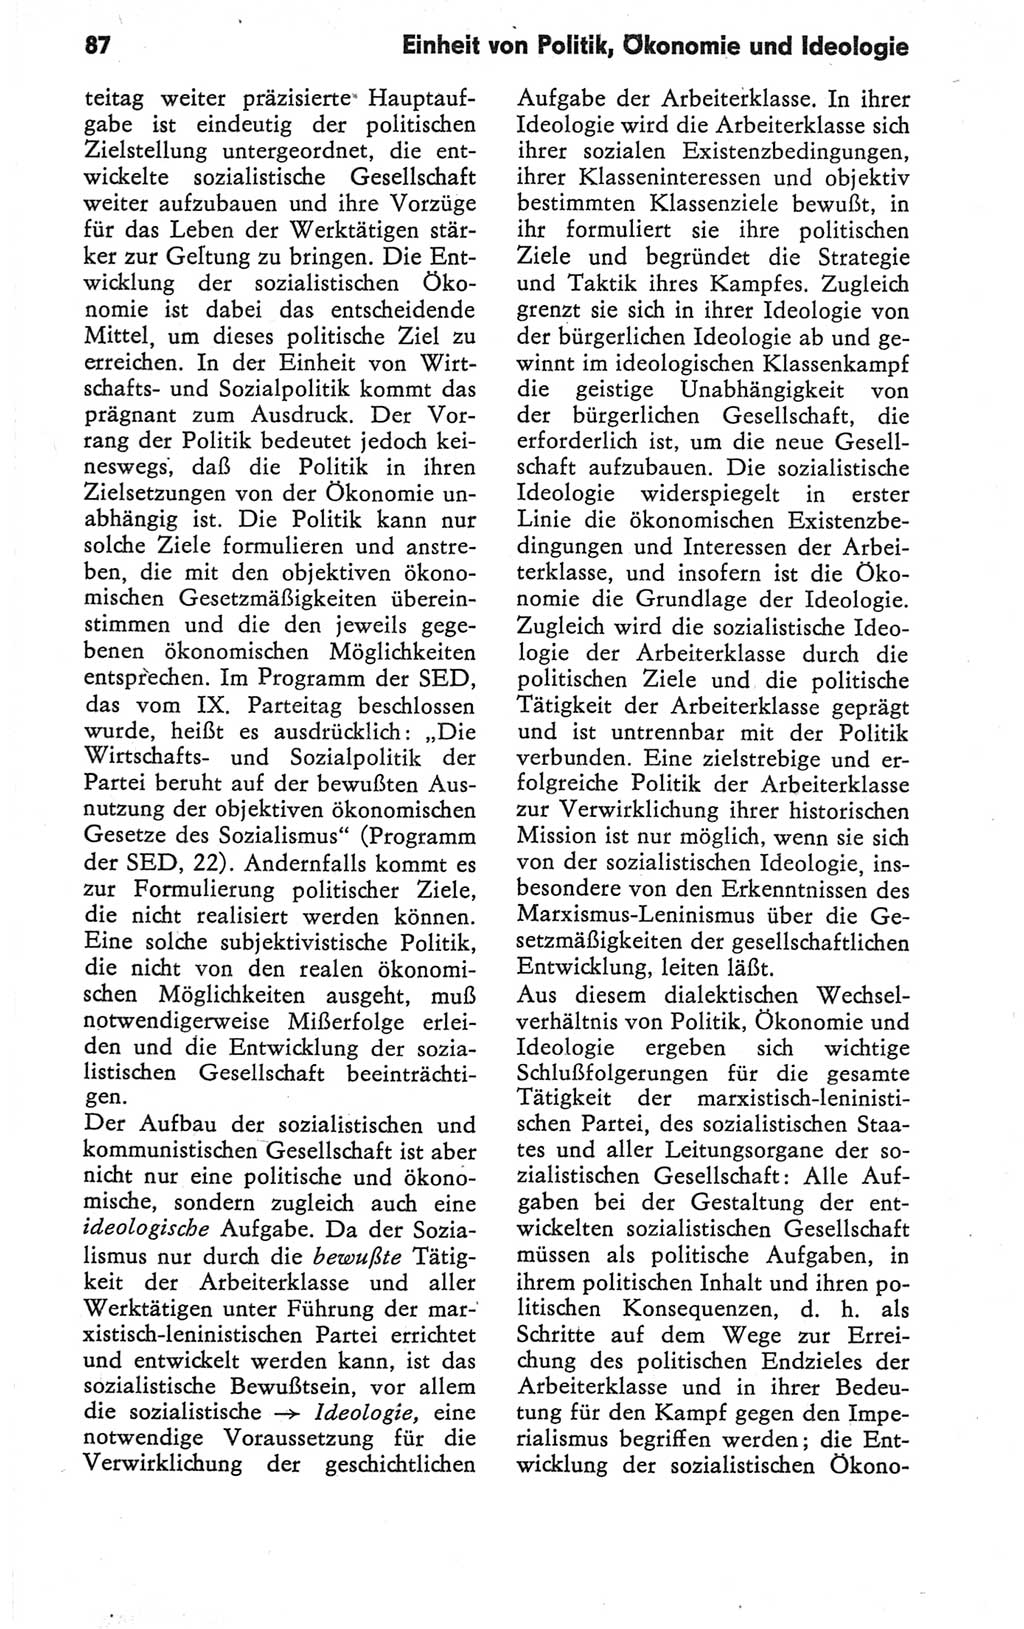 Kleines Wörterbuch der marxistisch-leninistischen Philosophie [Deutsche Demokratische Republik (DDR)] 1979, Seite 87 (Kl. Wb. ML Phil. DDR 1979, S. 87)